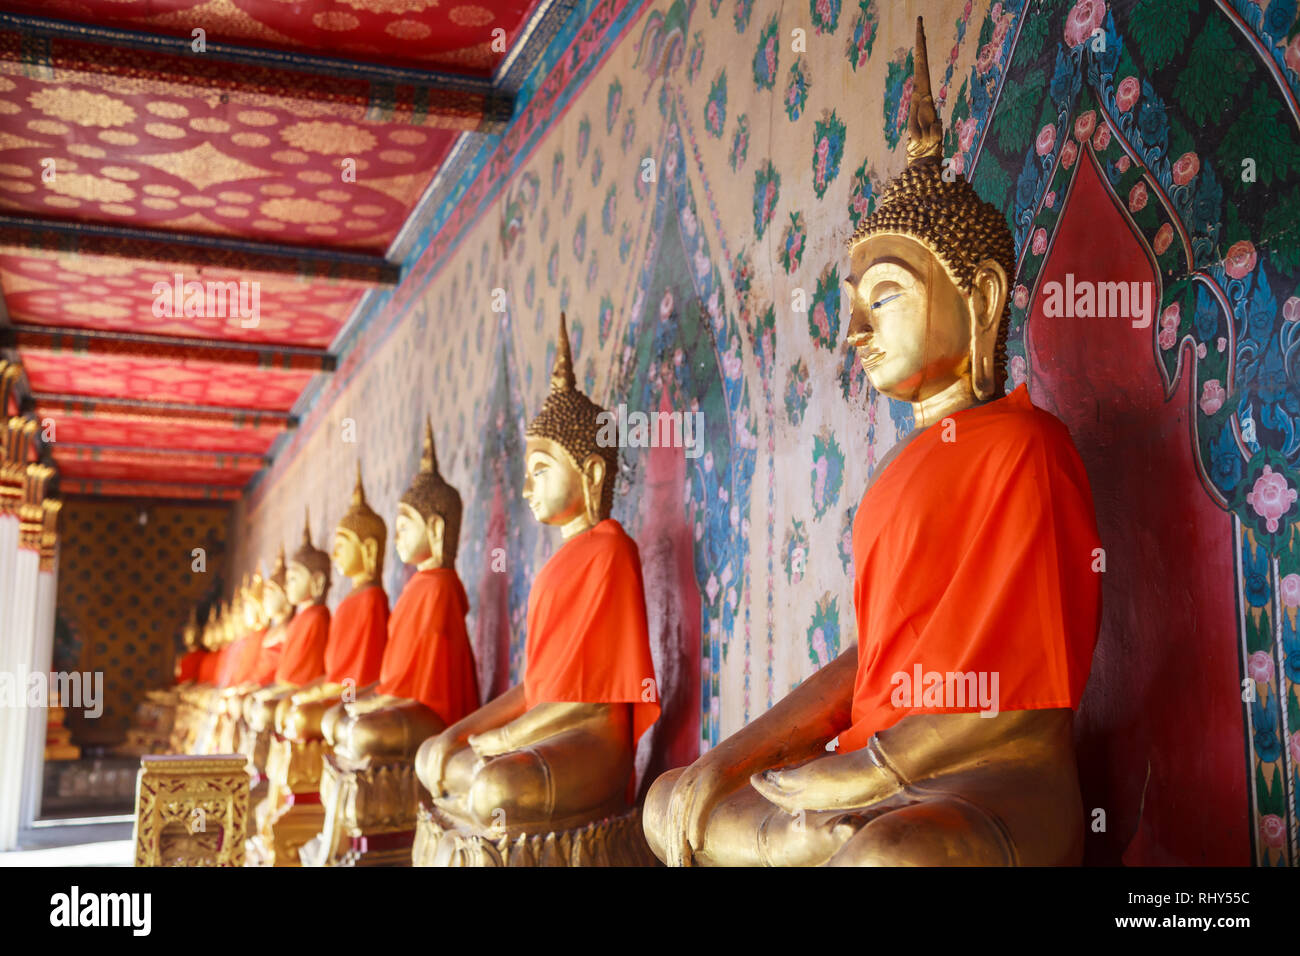 Images de Bouddha en stuc antique vieux dans l'attitude de subjuguer Mara (mauvais esprit) dans la galerie de grande chapelle de Wat Arun (le temple de l'aube) dans la région de Bangko Banque D'Images